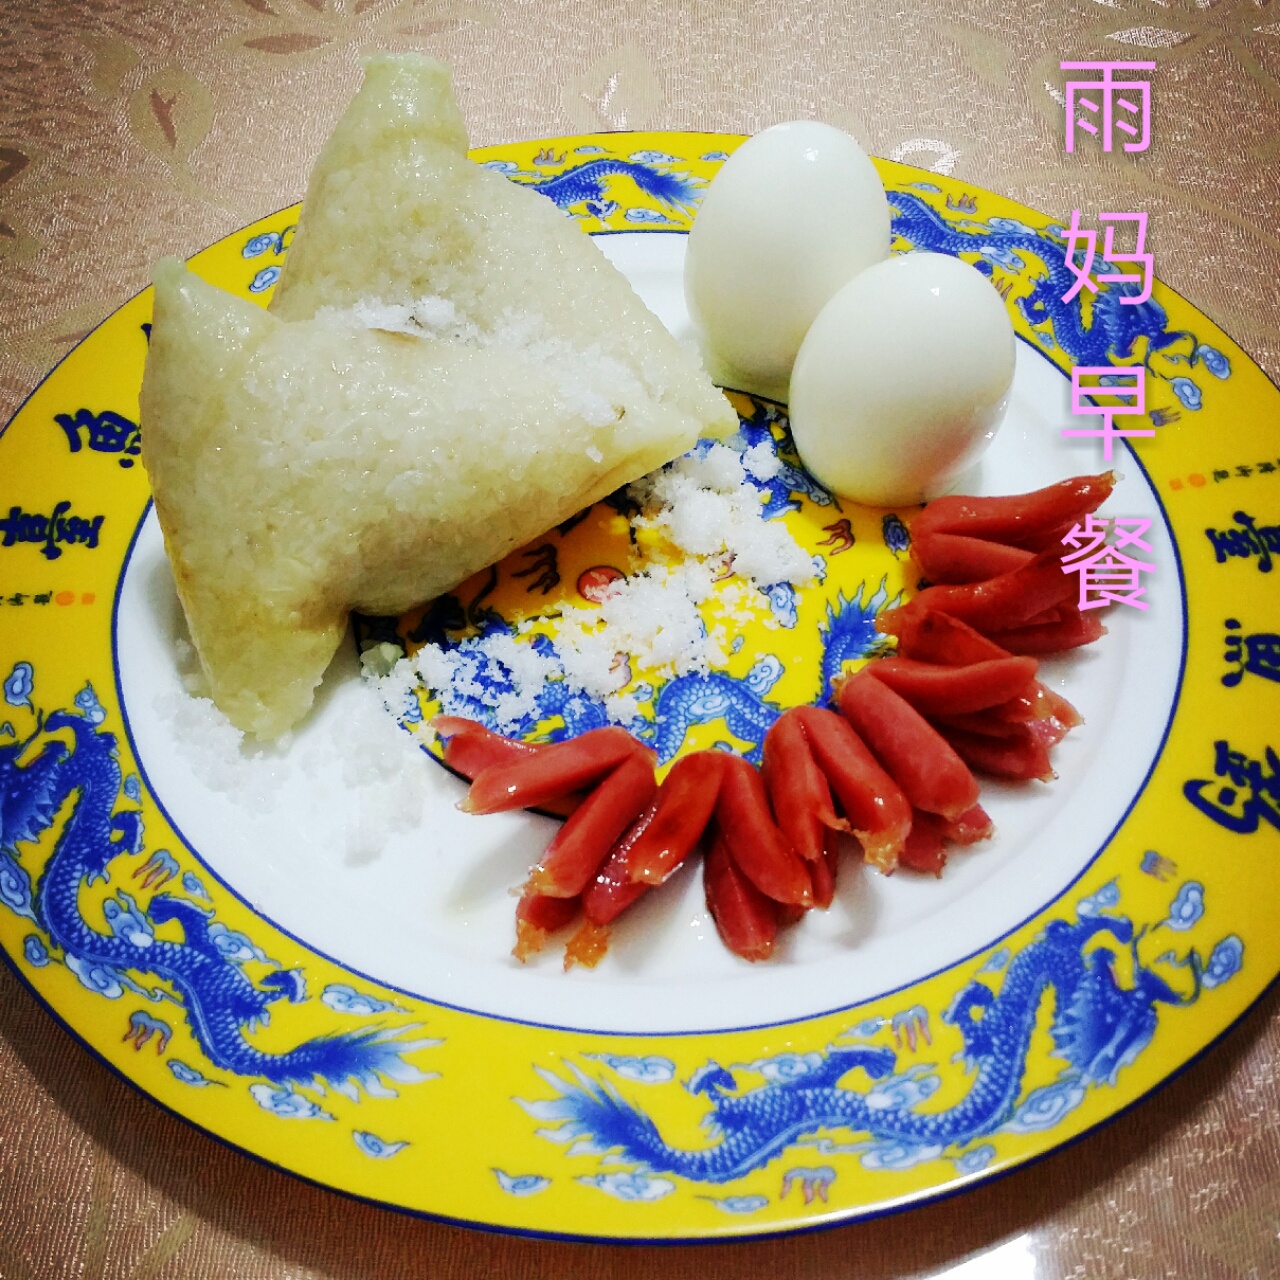 红枣粽